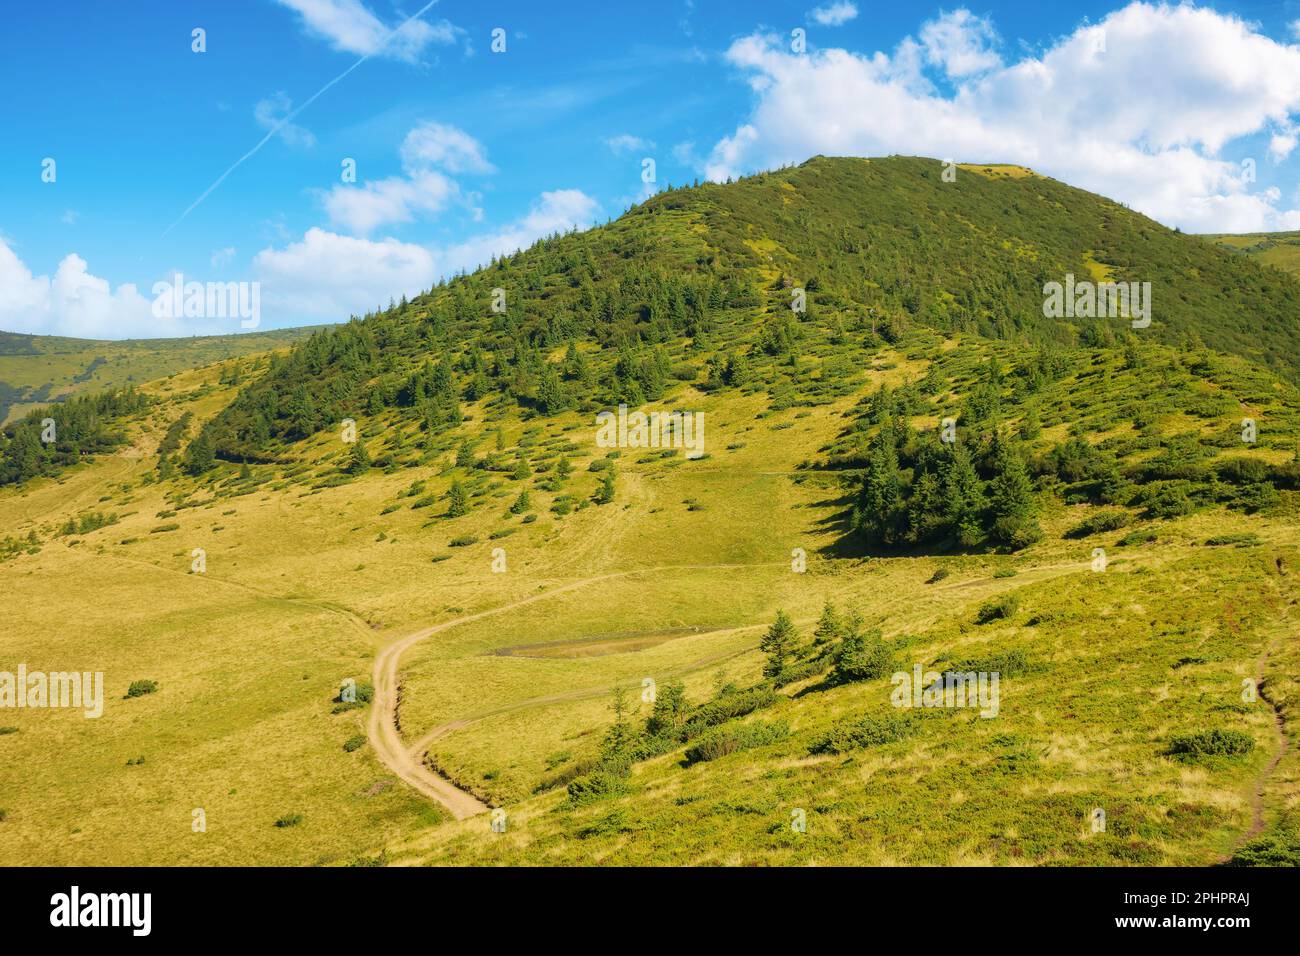 sentiero tra colline e prati. scenario alpino dei carpazi ucraini. meta turistica popolare per la montagna petros in estate Foto Stock